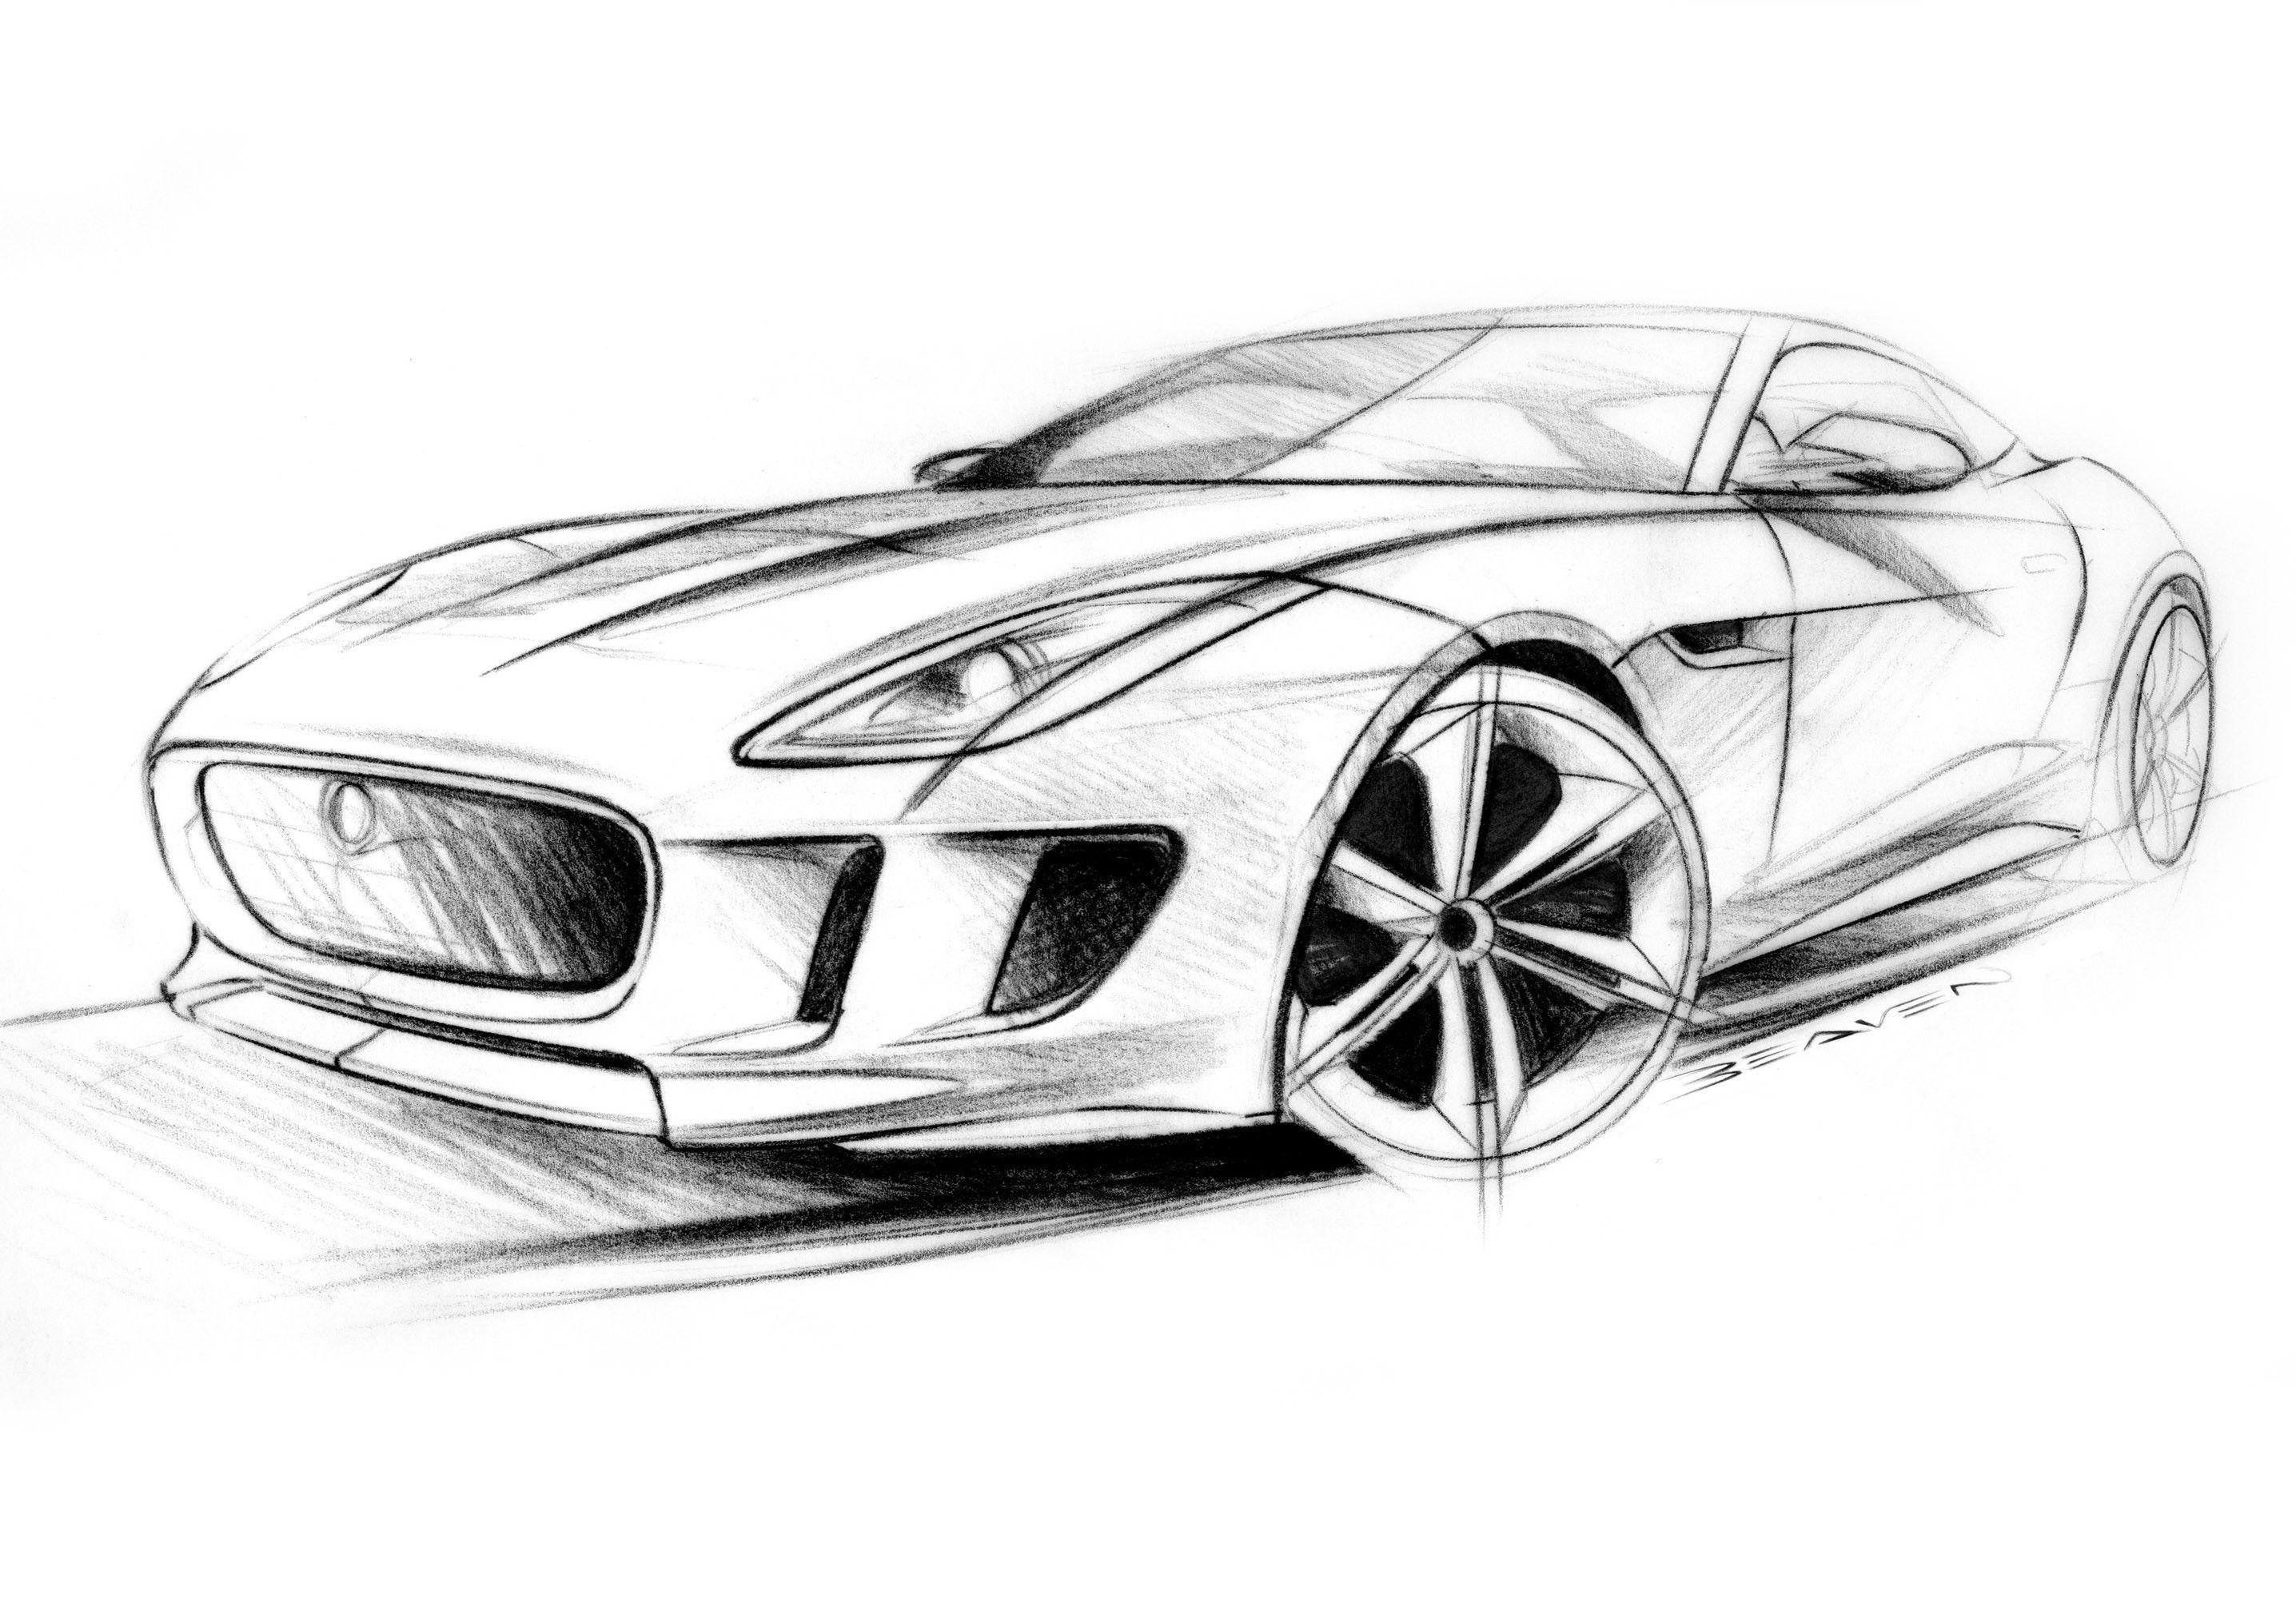 19000 Car Sketch Illustrations RoyaltyFree Vector Graphics  Clip Art   iStock  Electric car sketch Concept car sketch Car sketch icon